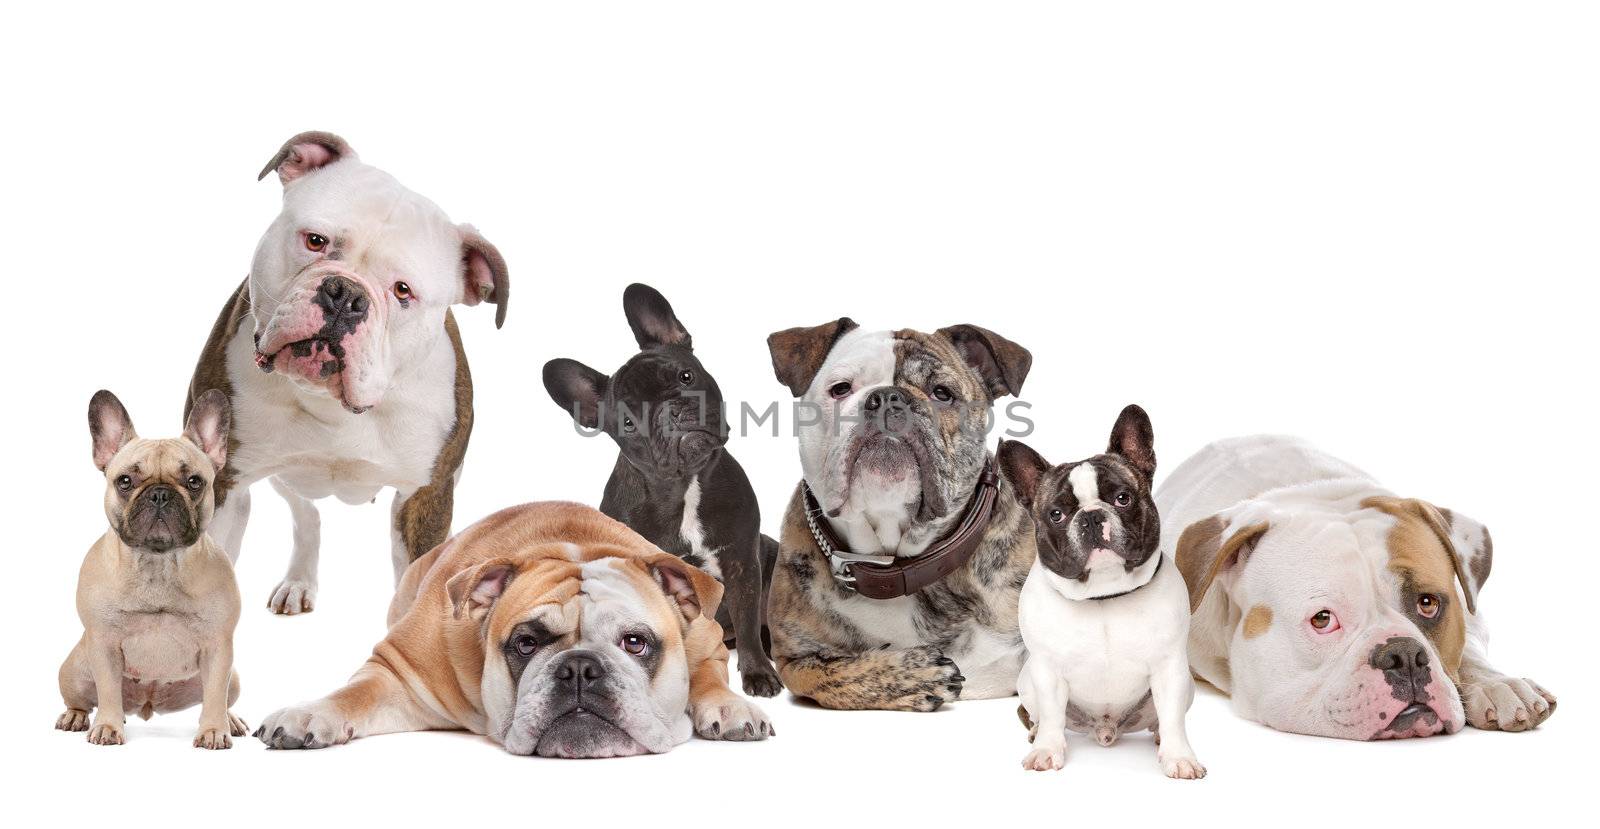 The Bulldog Family.American Bulldog,English Bulldog and French Bulldog